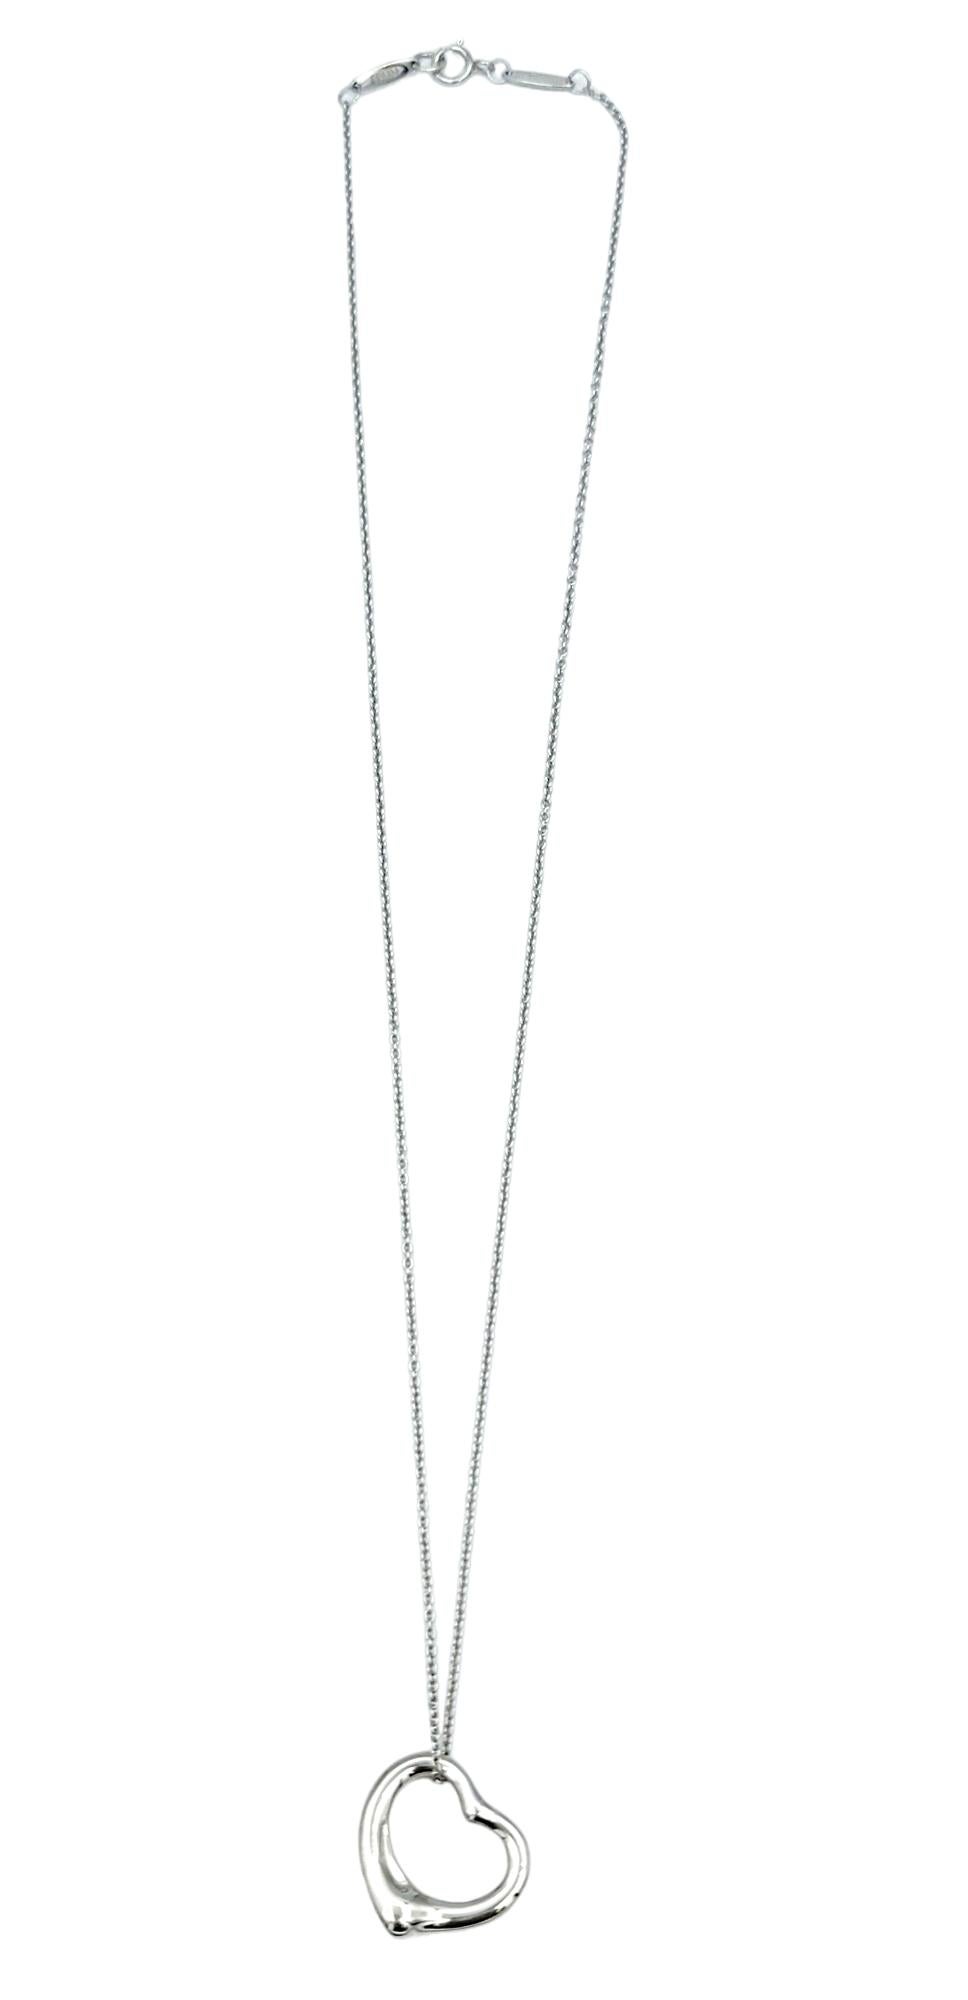 Contemporary Tiffany & Co. Elsa Peretti Open Heart Pendant Chain Necklace Set in Platinum For Sale